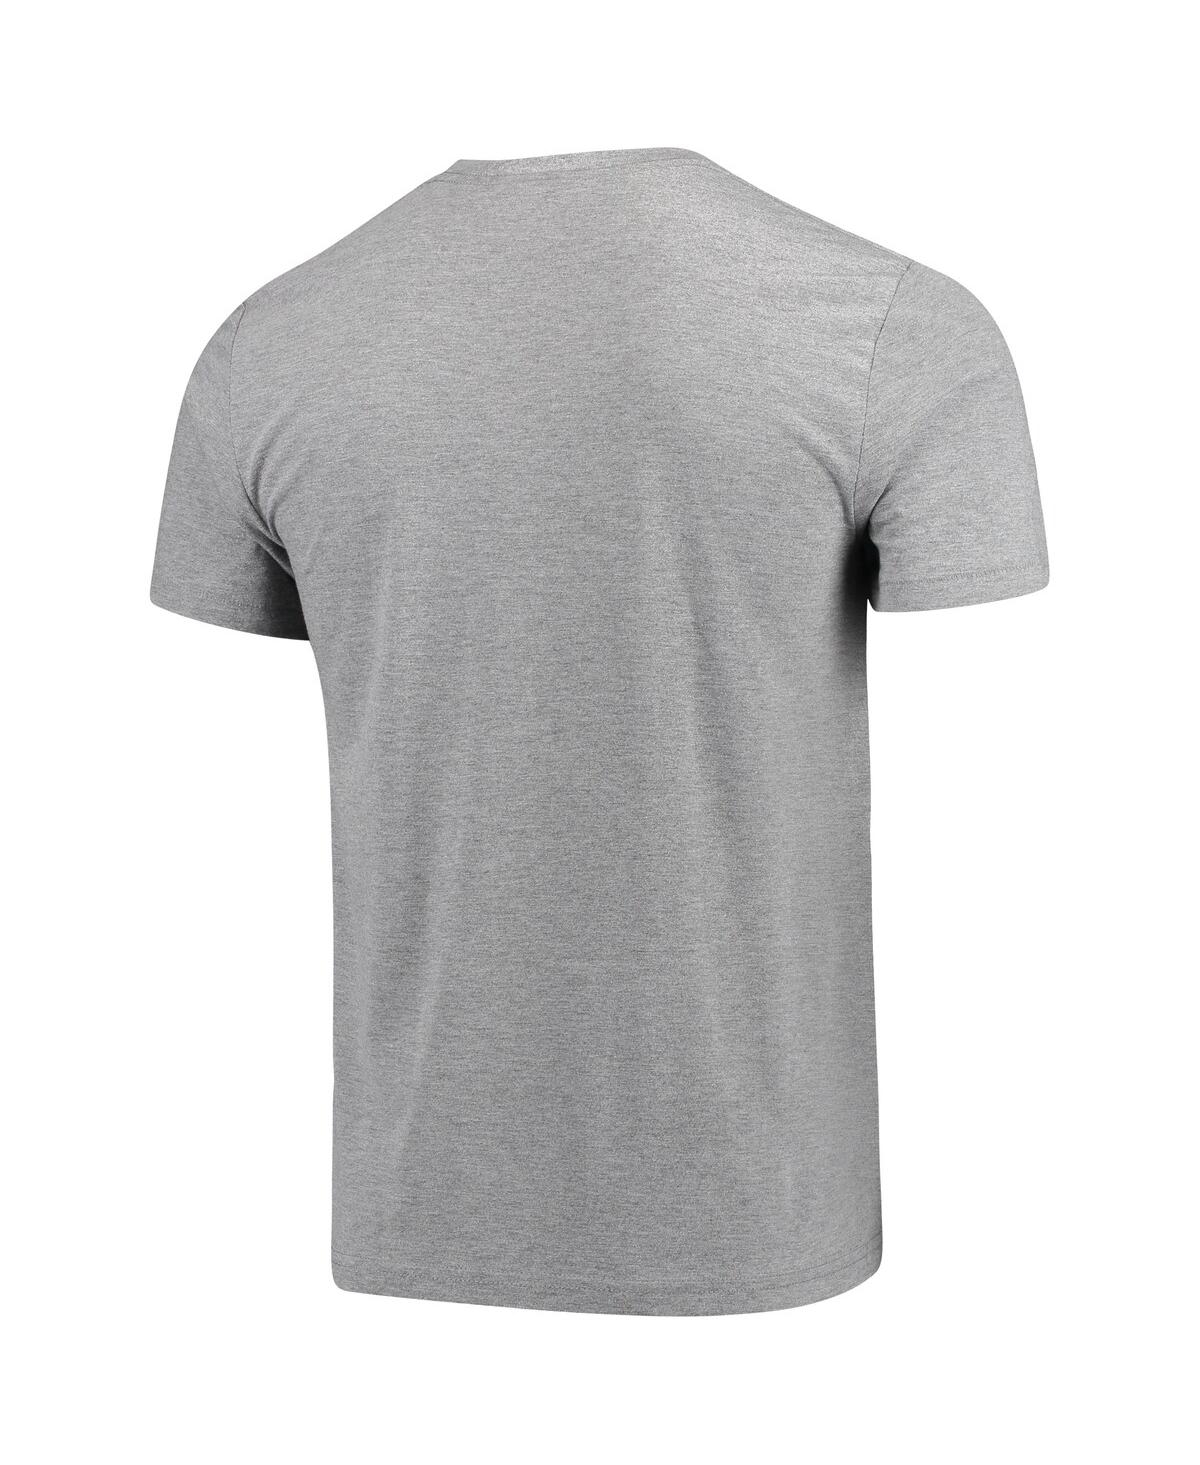 Shop Homage Men's Zion Williamson Gray New Orleans Pelicans Player Graphic Tri-blend T-shirt